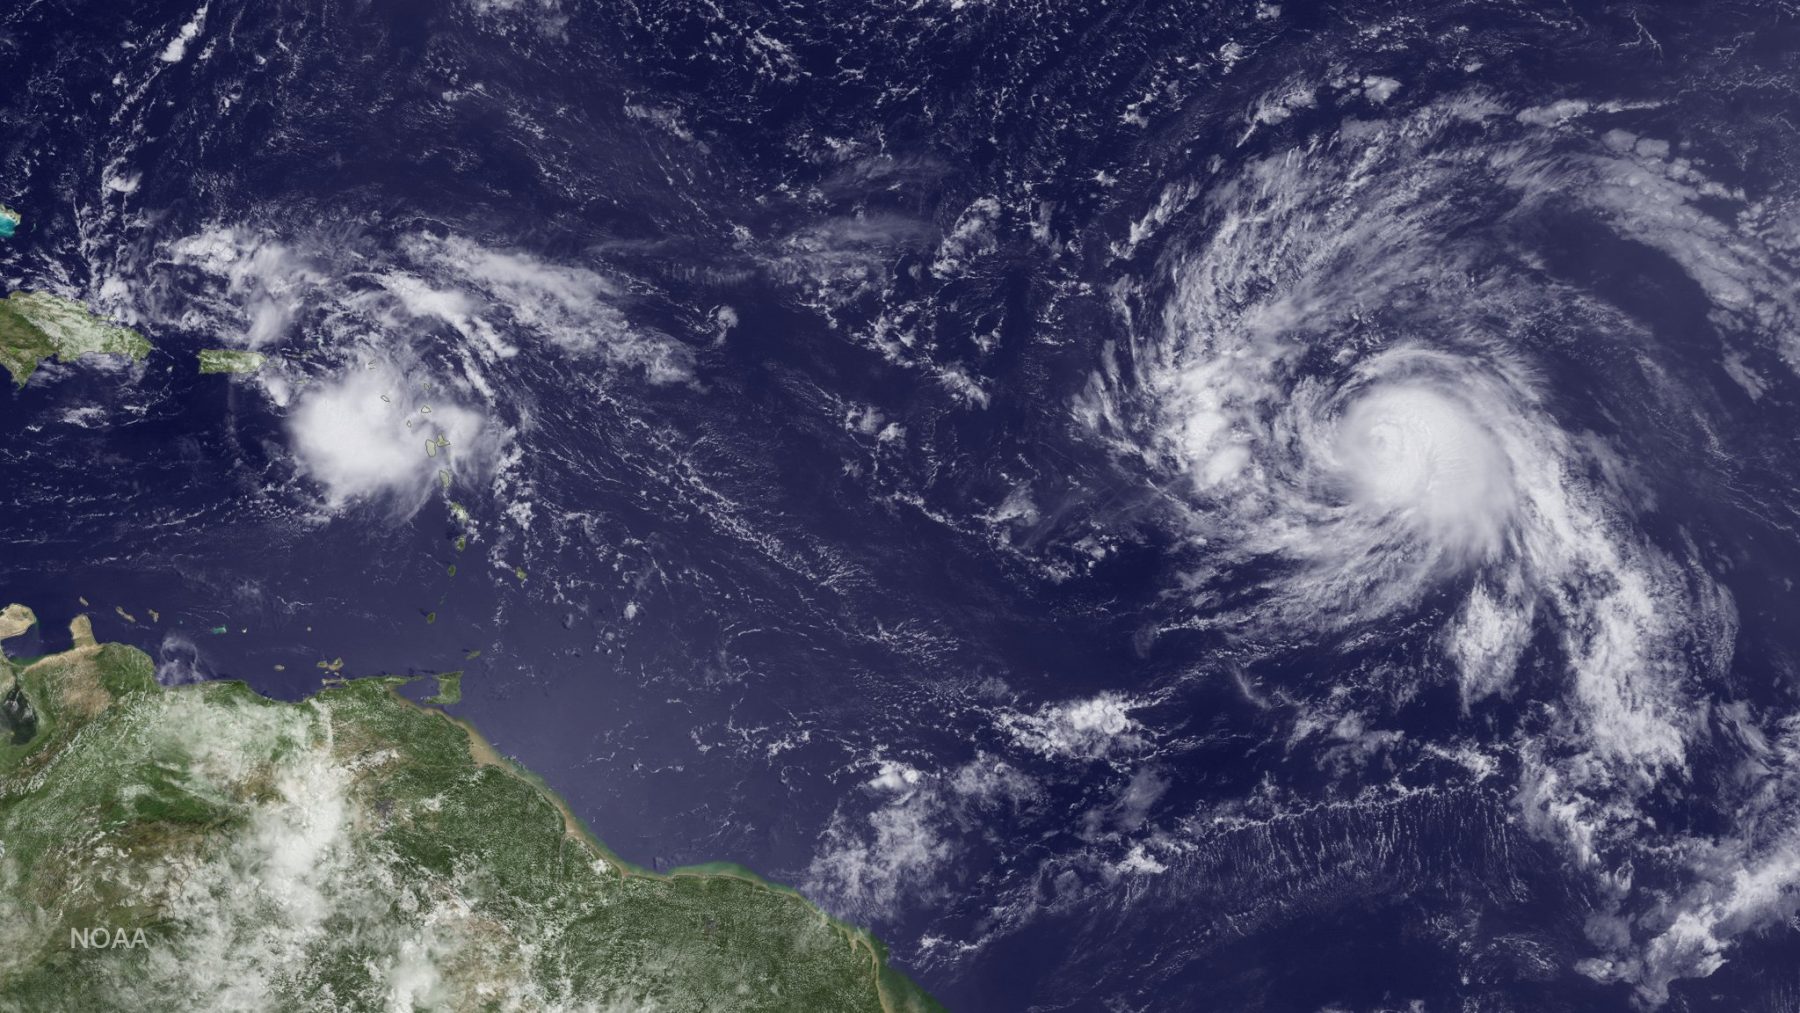 AL99 (izquierda) y Gastón (derecha) observados en el Atlántico. Crédito de la imagen: NOAA